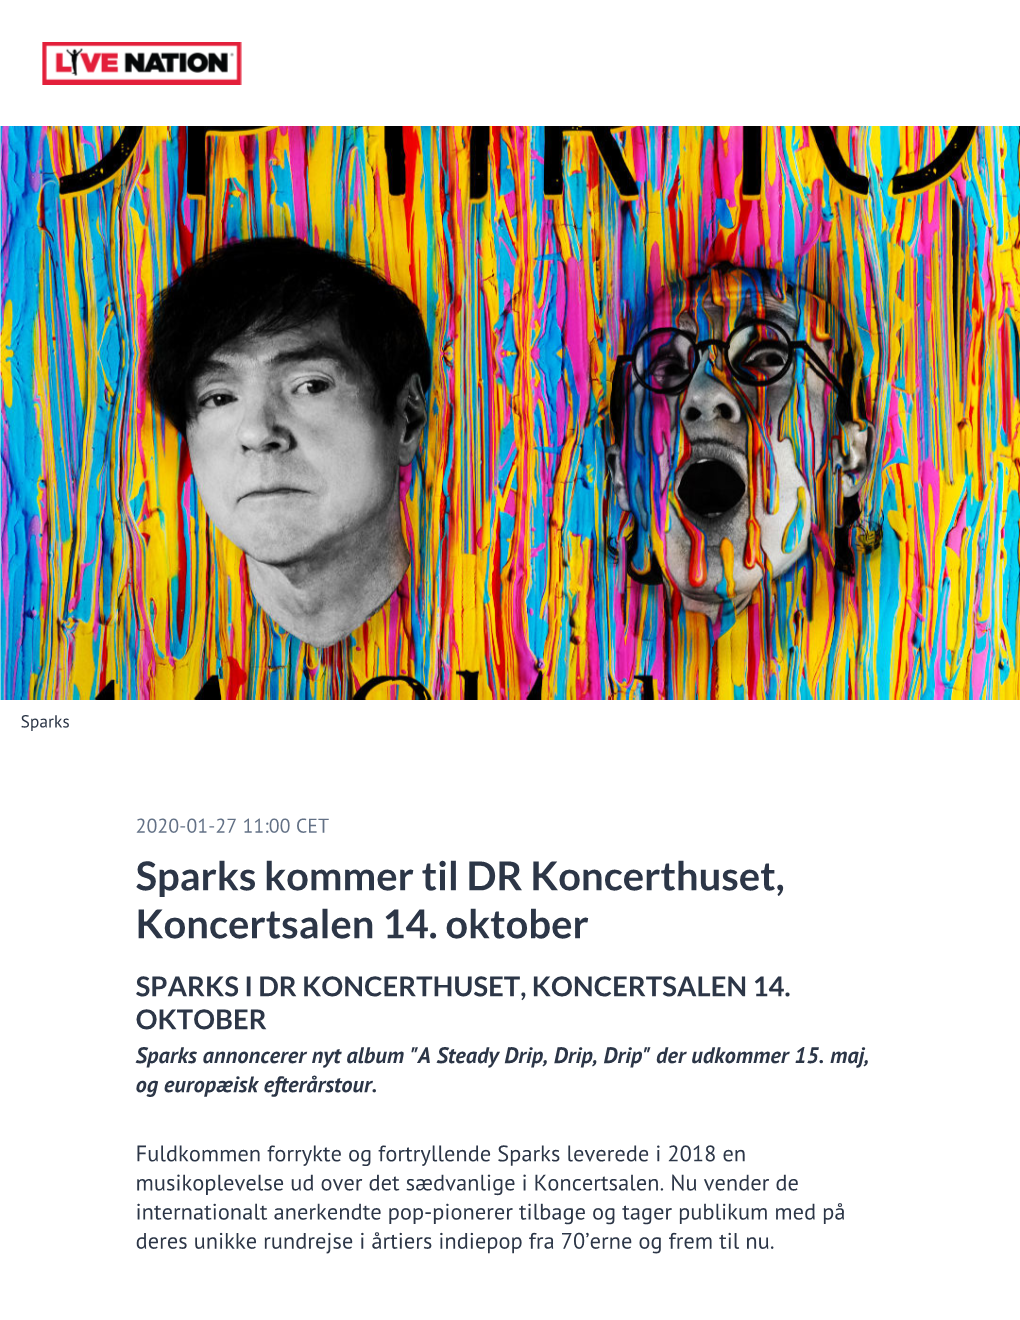 Sparks Kommer Til DR Koncerthuset, Koncertsalen 14. Oktober